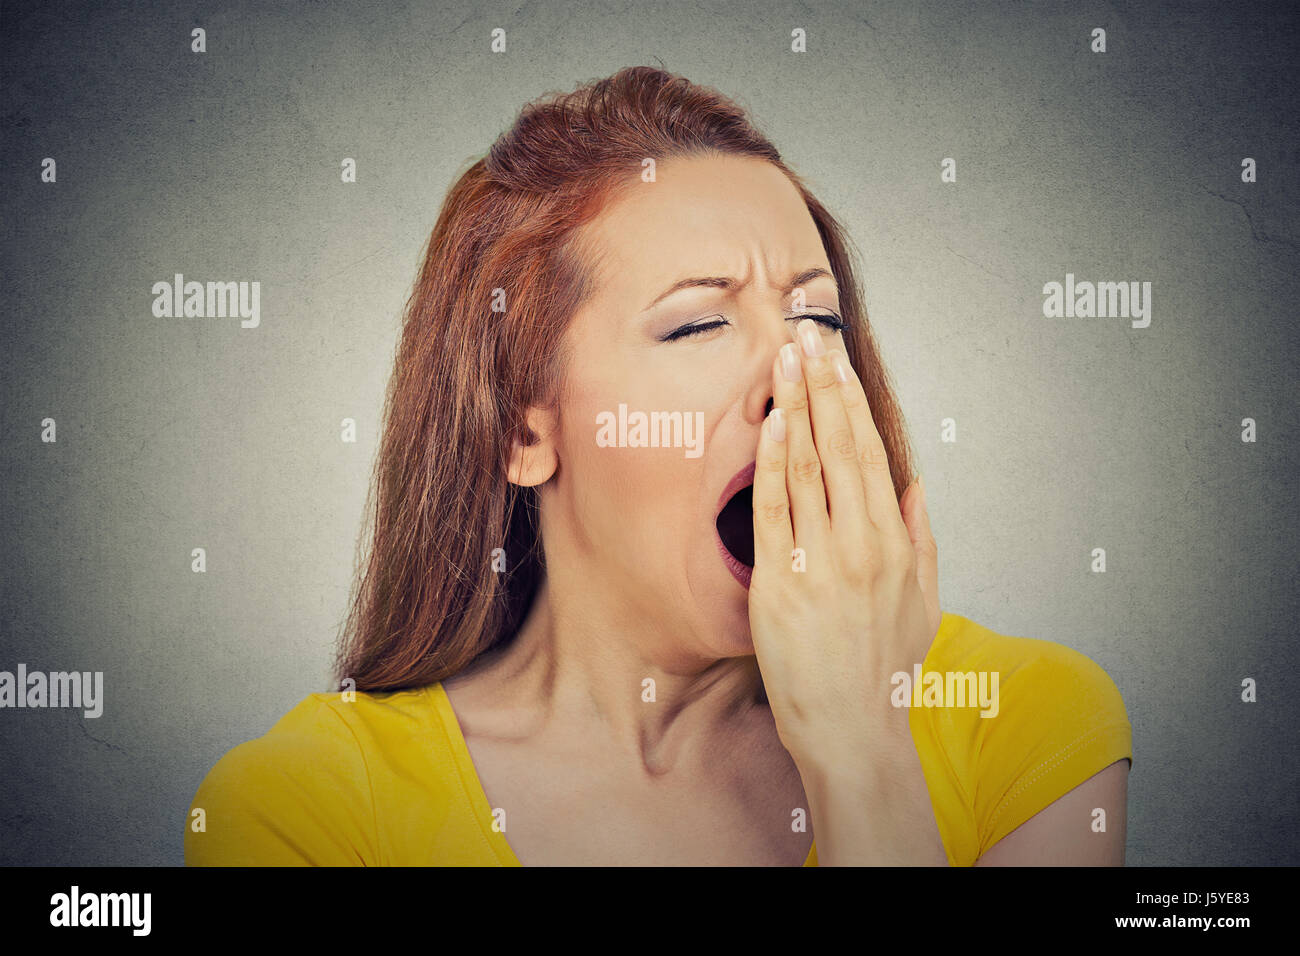 Es ist zu früh zu treffen. Closeup Portrait Kopfschuss verschlafene junge  Frau mit weit offenem Mund Gähnen Augen geschlossenen aussehende  gelangweilt isolierte graue Wand ba Stockfotografie - Alamy